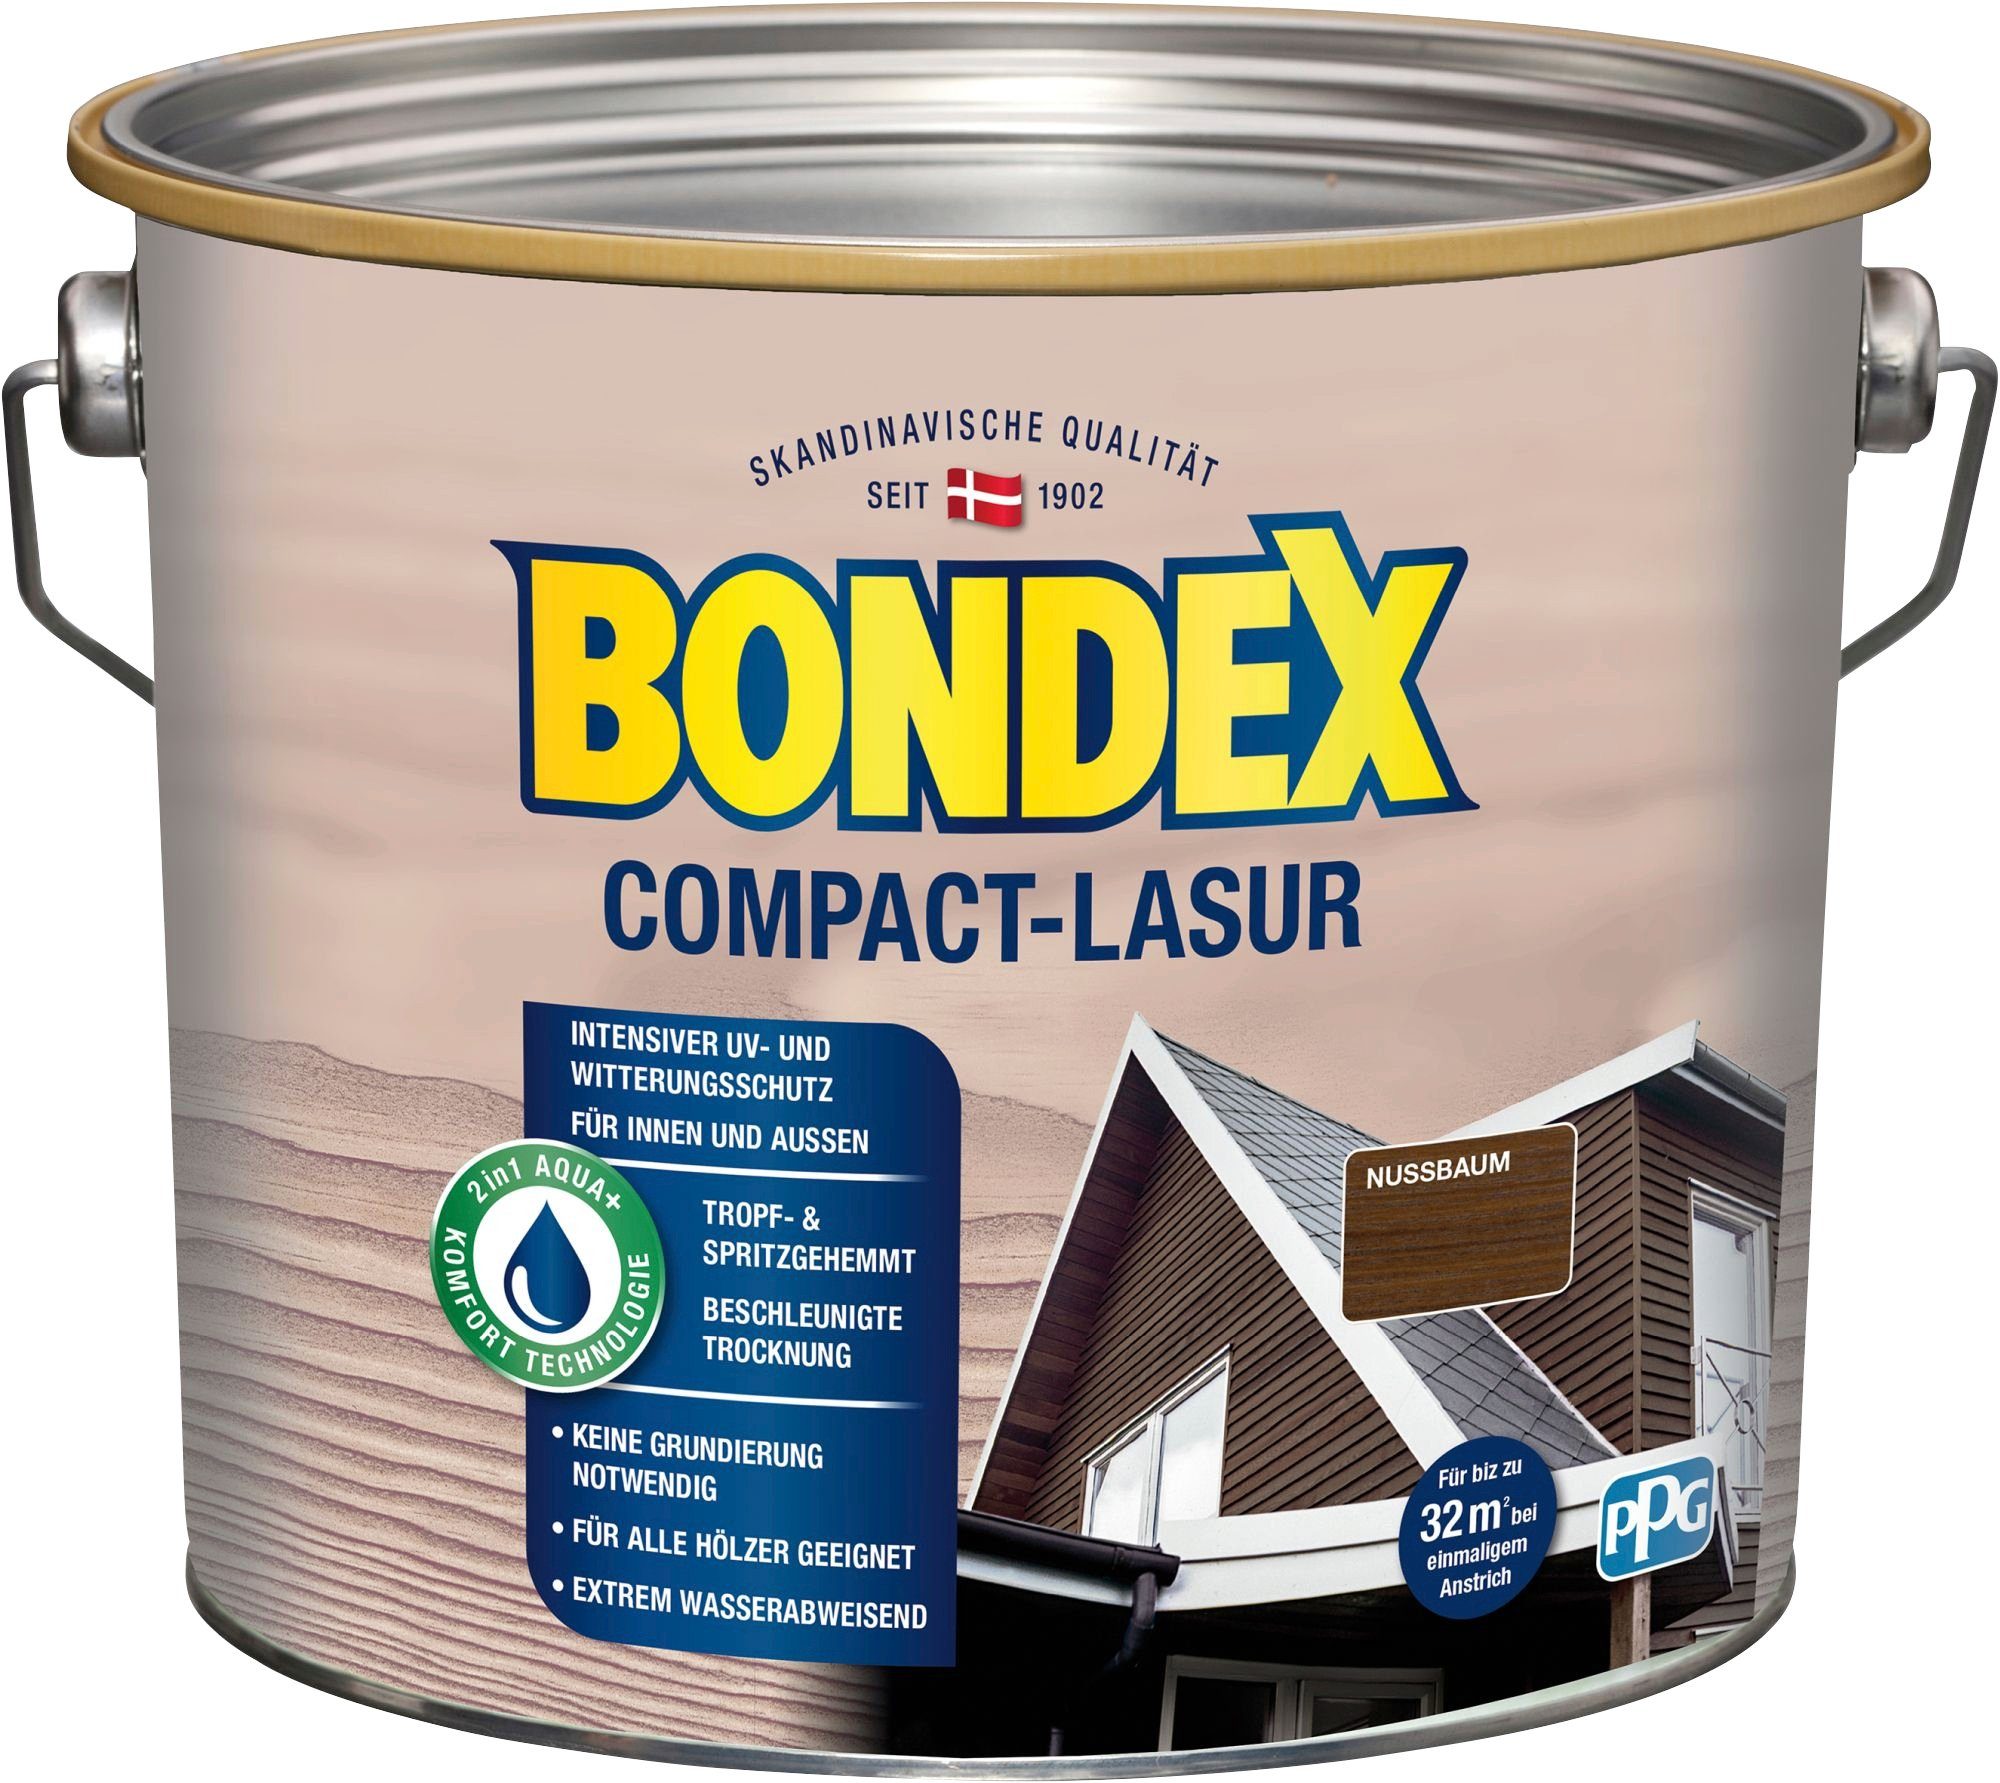 Bondex Holzschutzlasur COMPACT-LASUR, intensiver UV- & Witterungsschutz, extrem wasserabweisend nussbaum